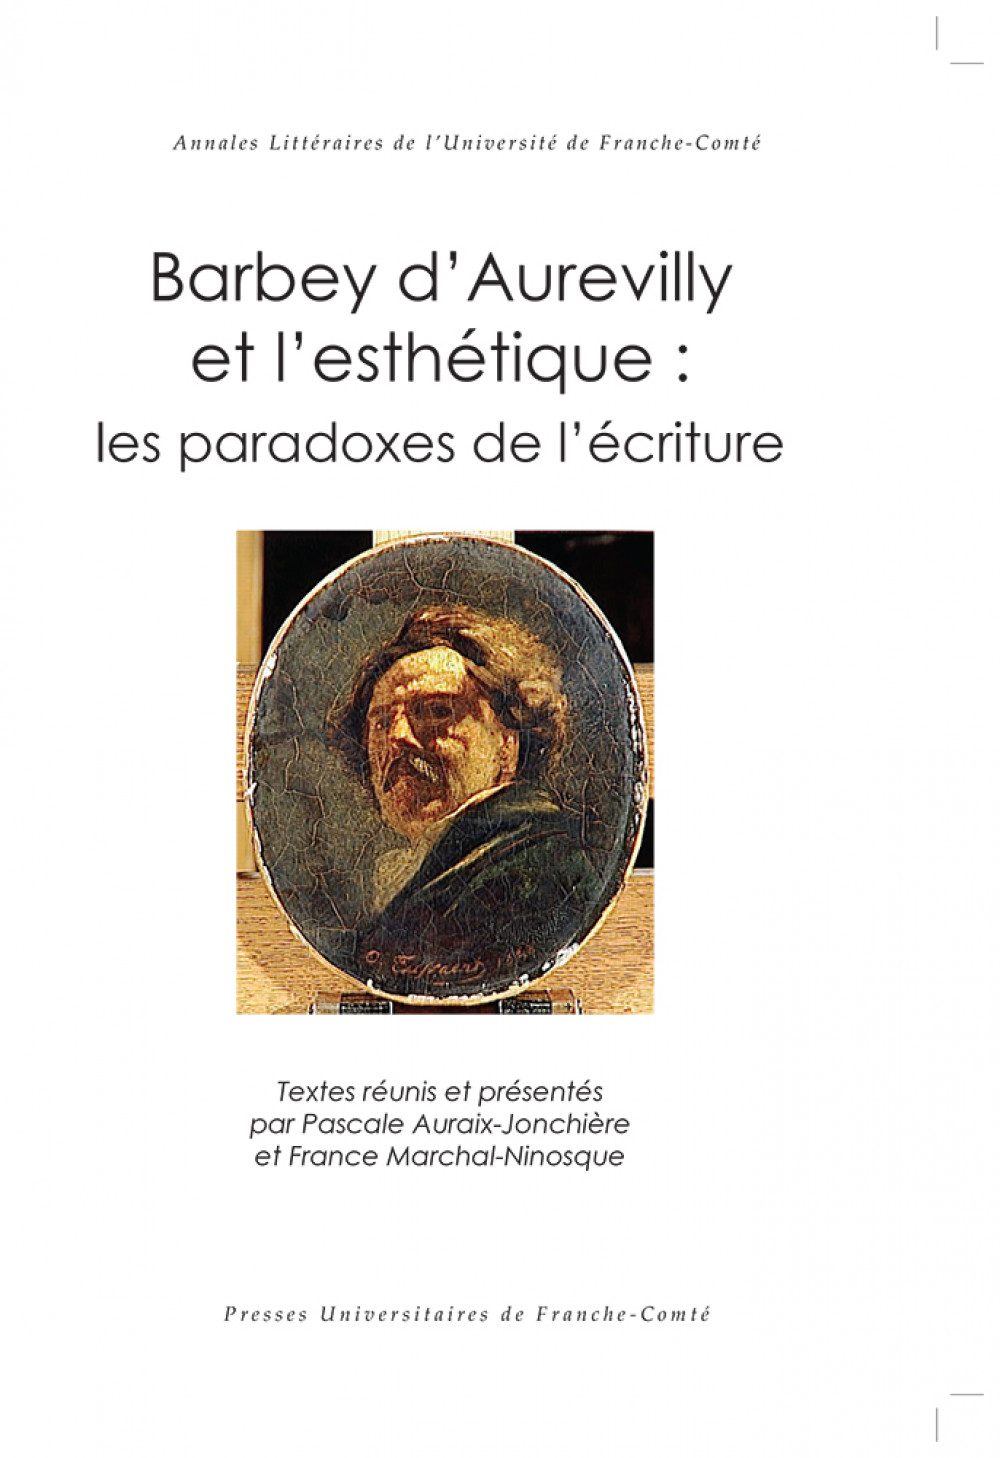 Barbey d'Aurevilly et l'esthétique : les paradoxes de l'écriture